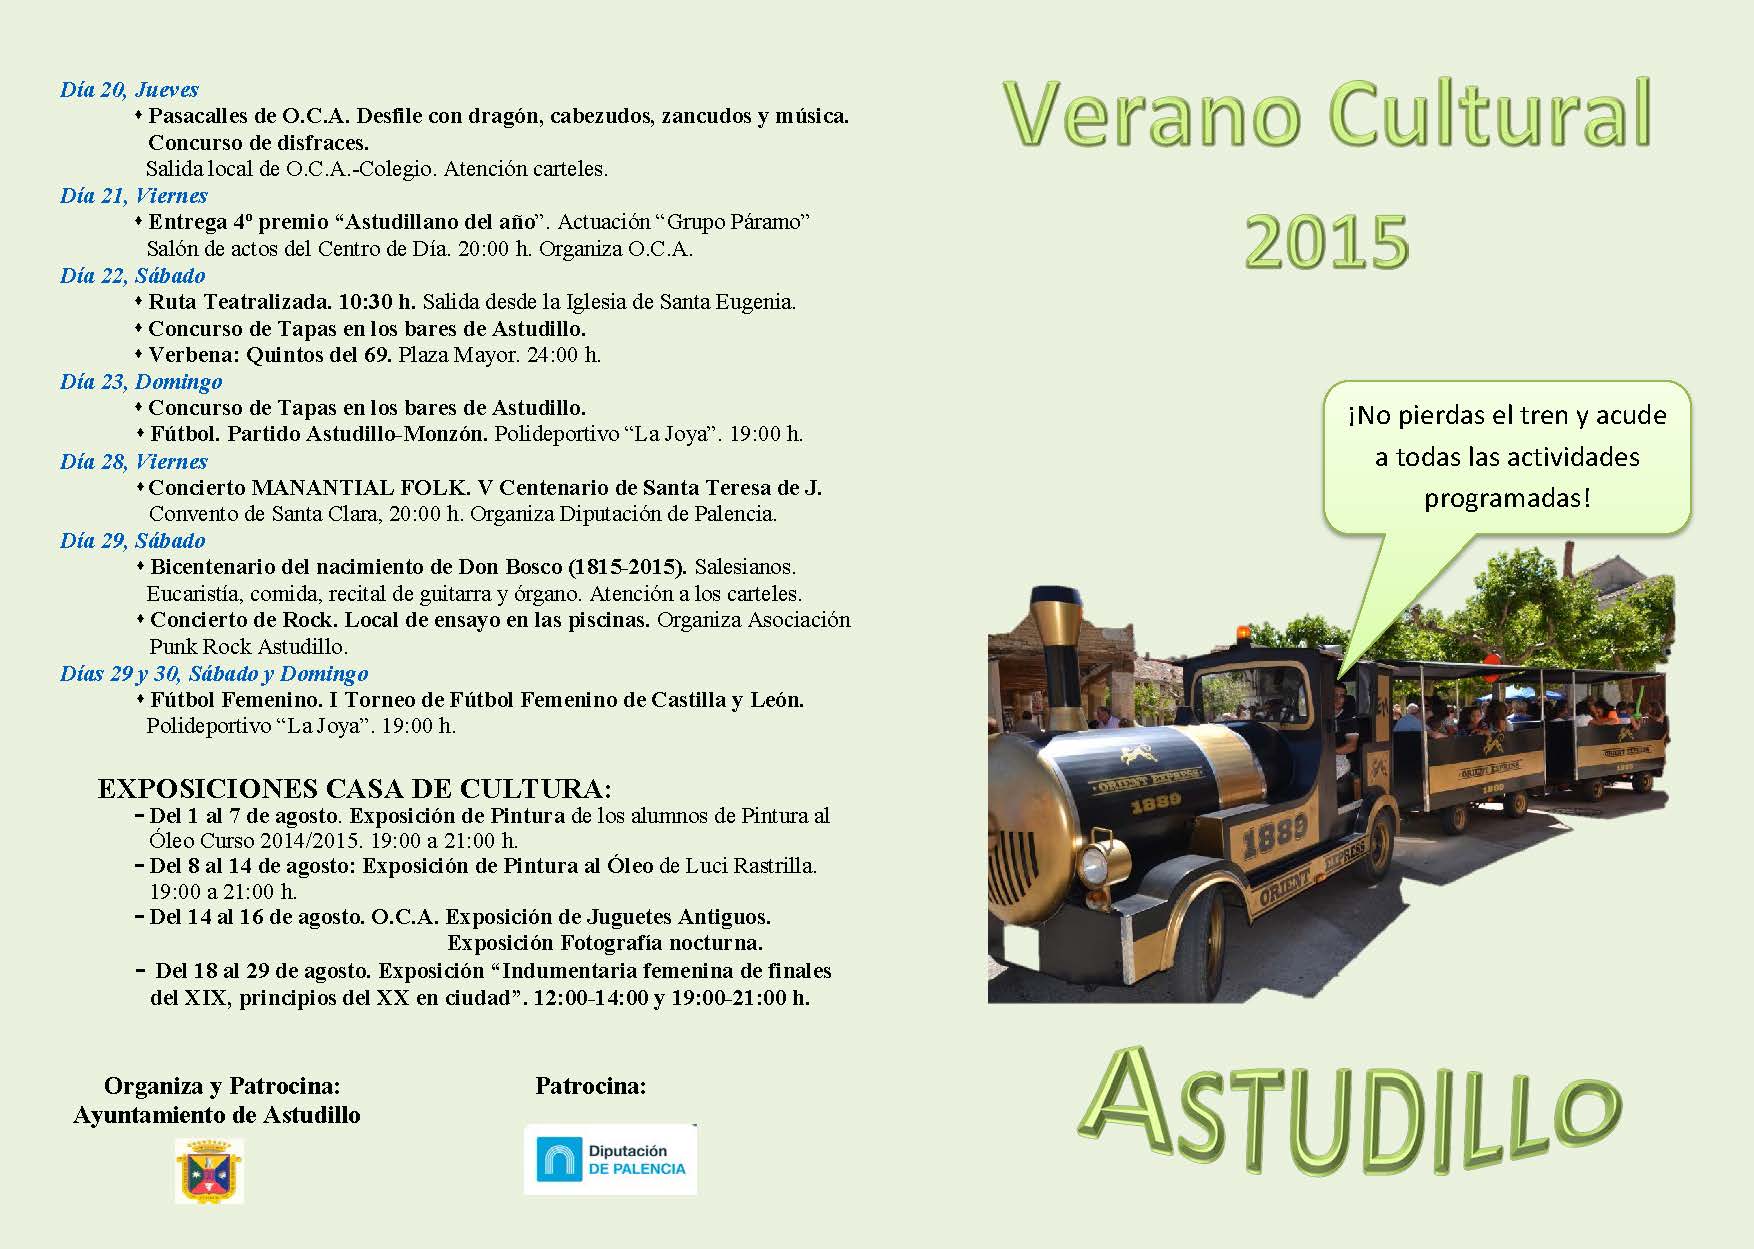 Verano Cultural 2015